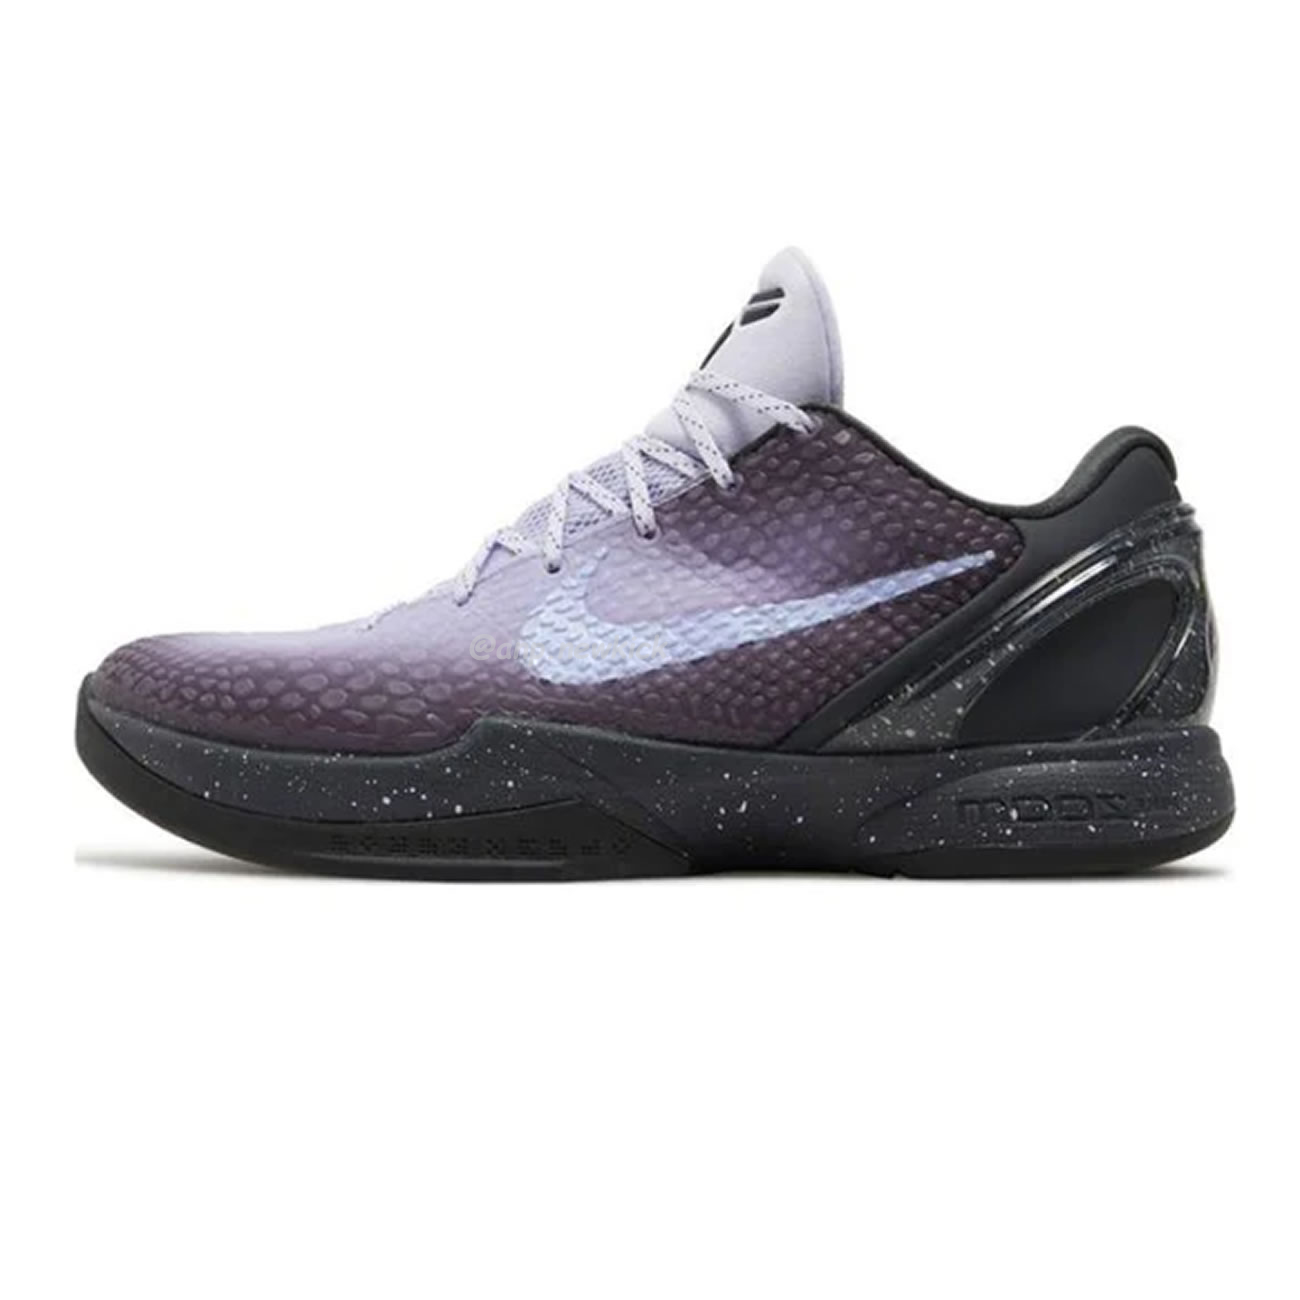 Nike Kobe 6 Protro Eybl Dm2825 001 (1) - newkick.org